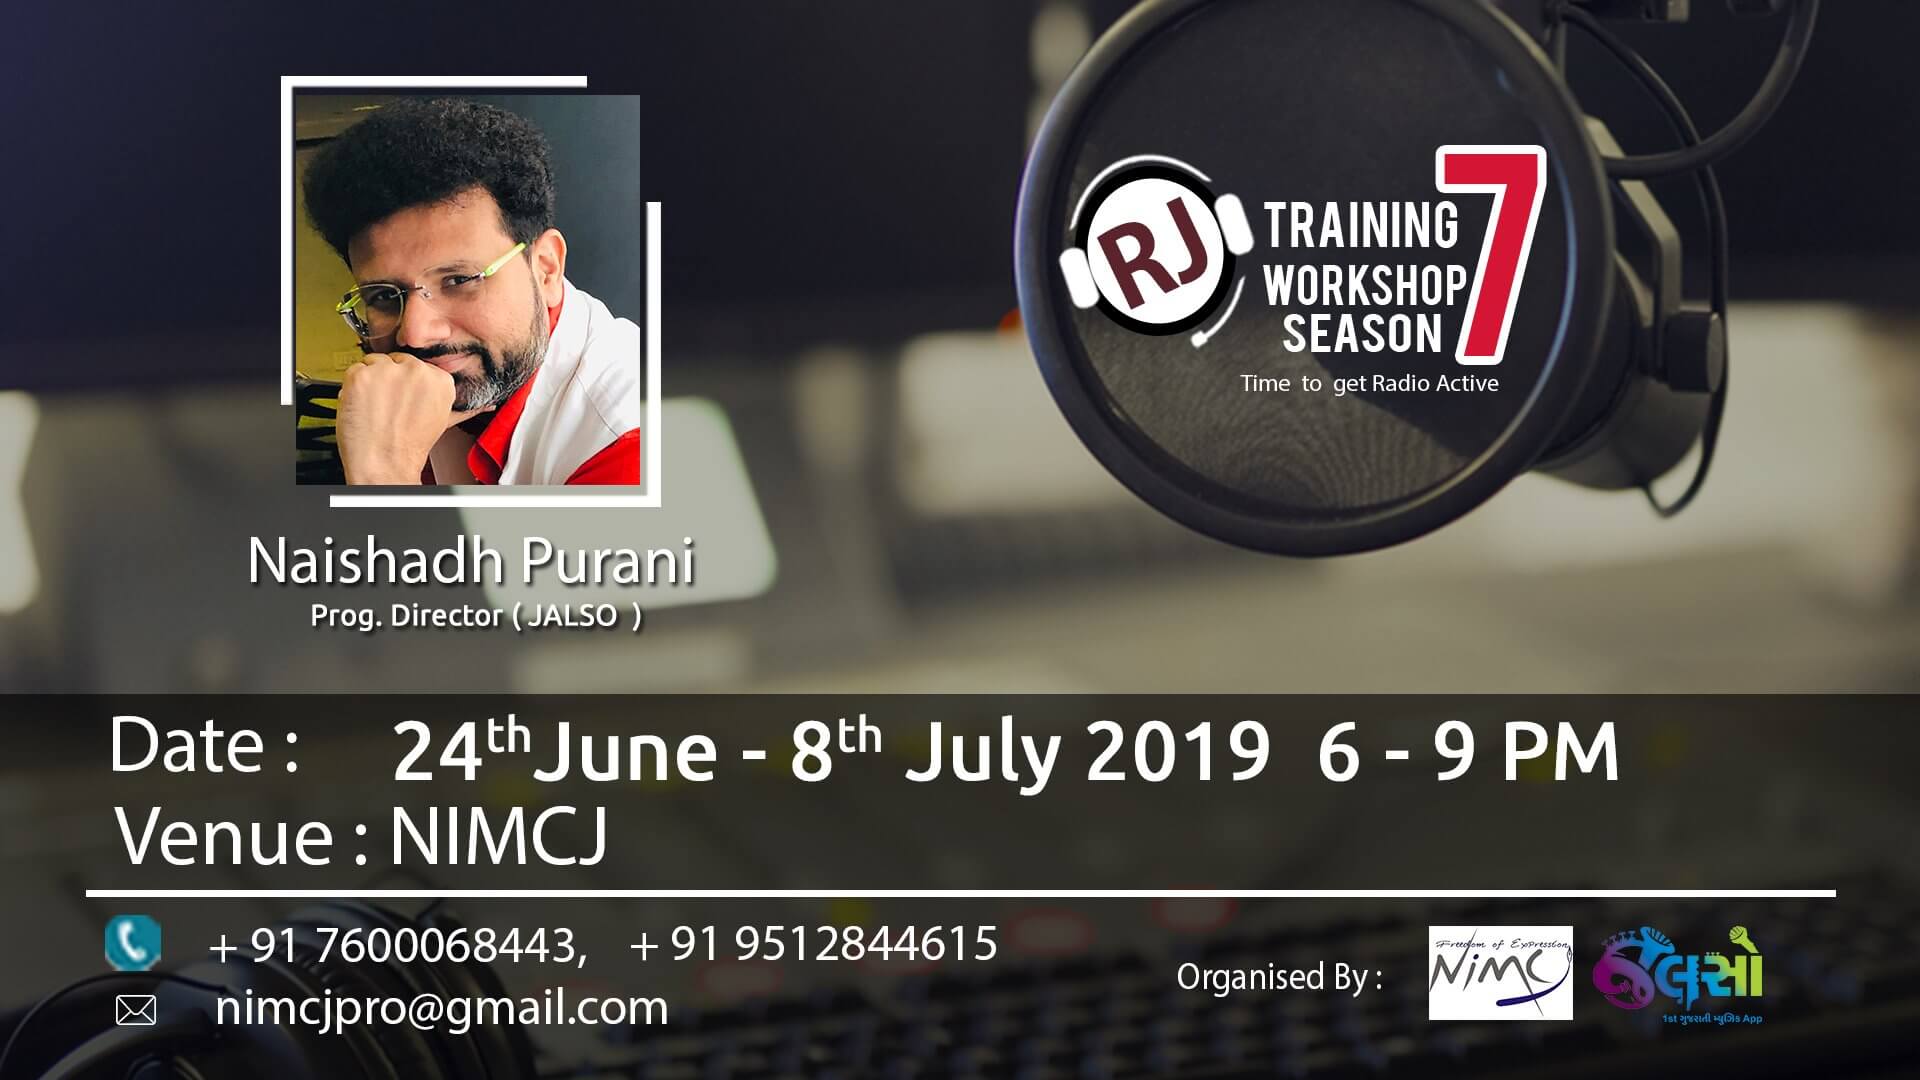 RJ Training Workshop Season 7, Ahmedabad, Gujarat, India